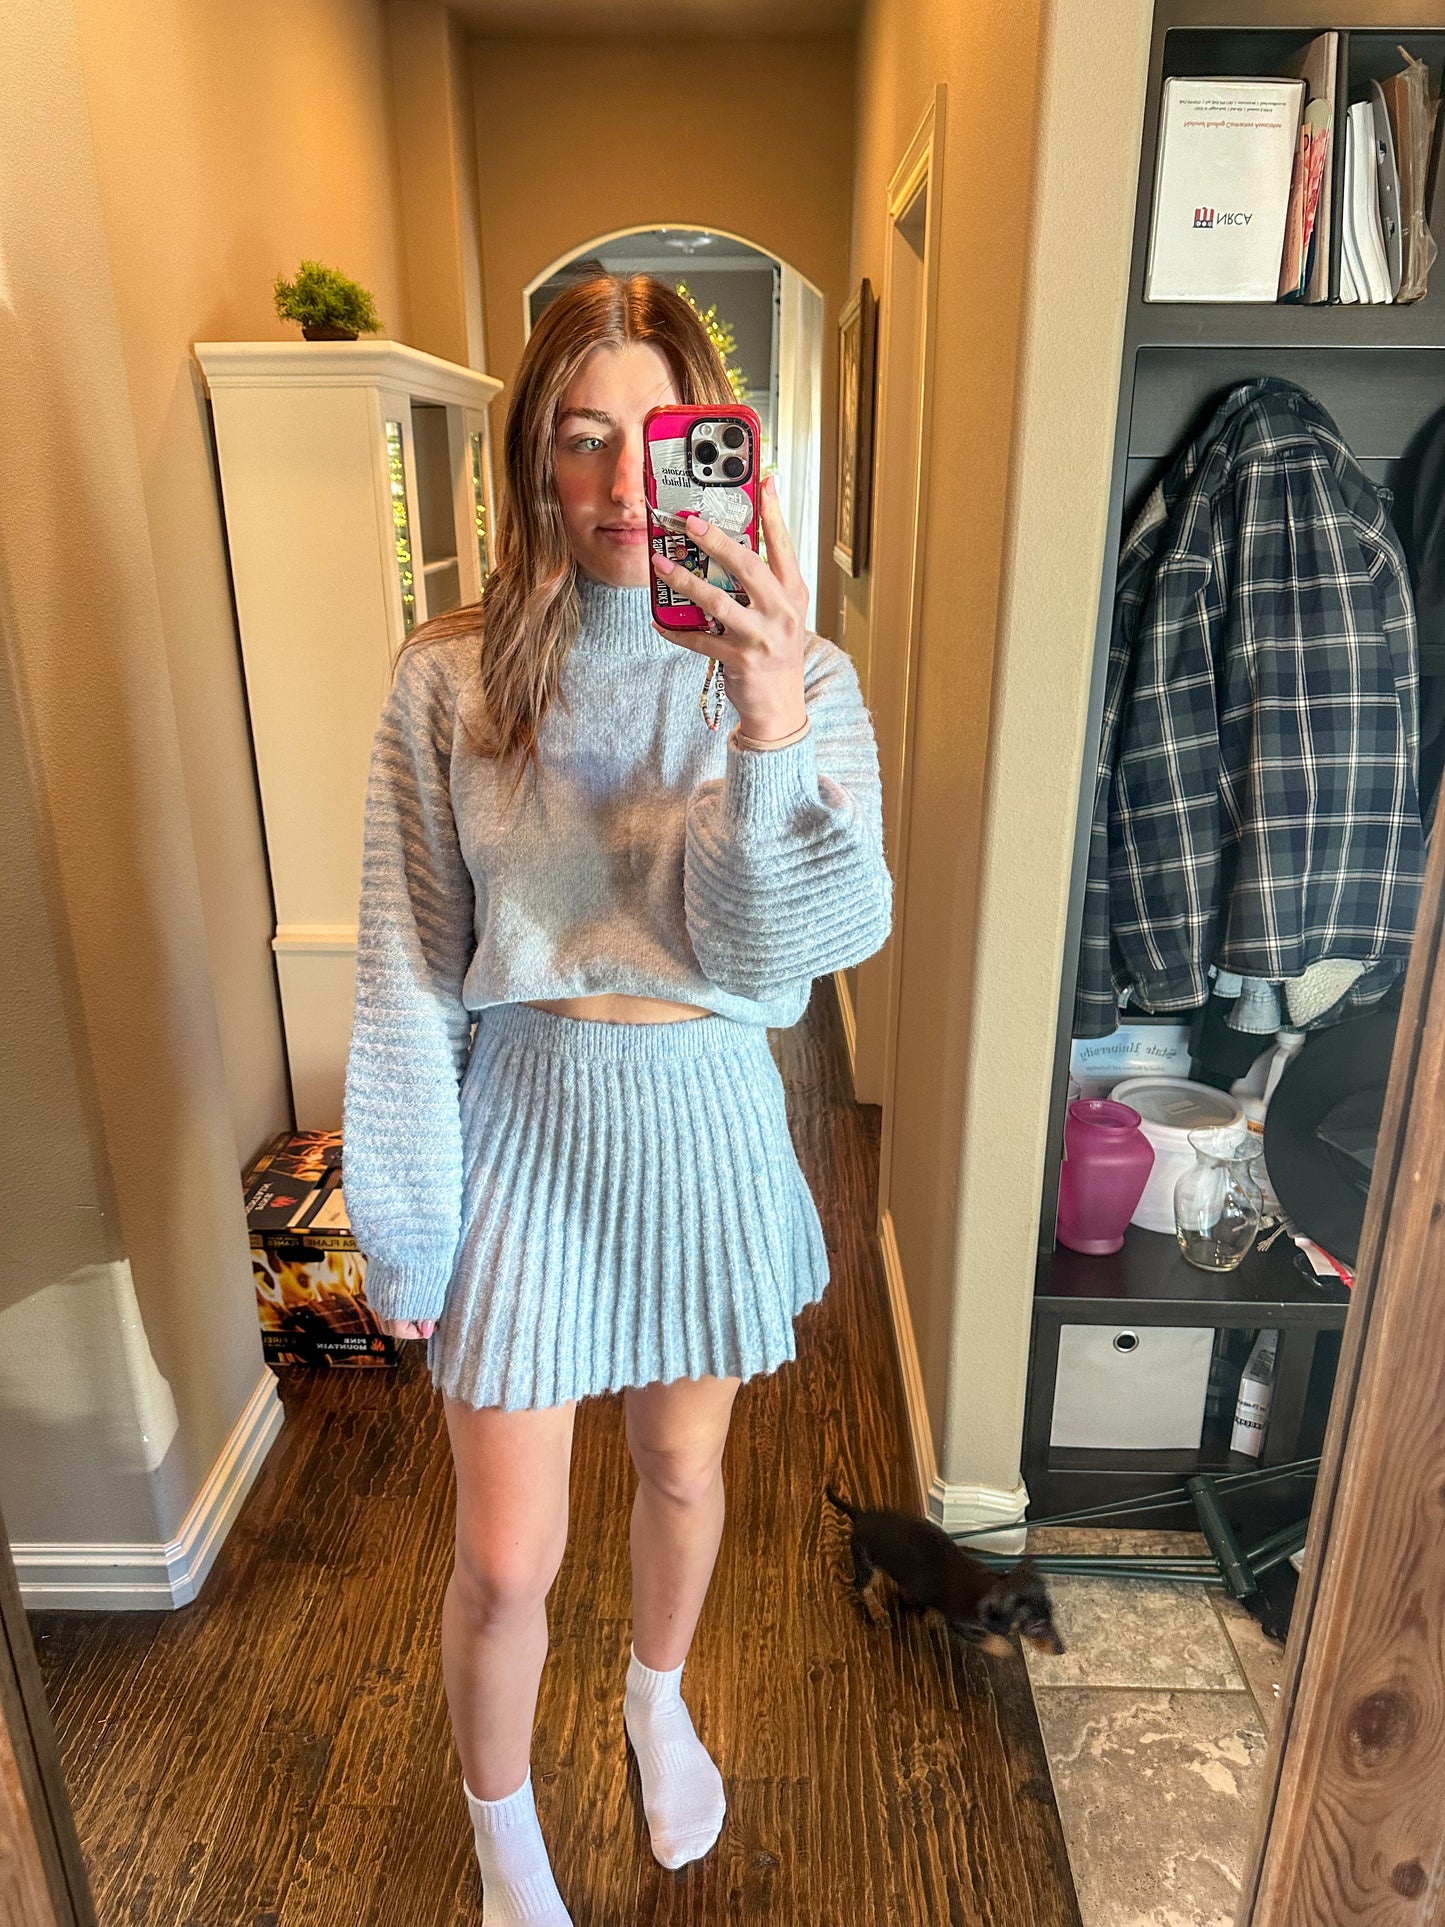 Gabriella Sweater Skirt (part of a set)